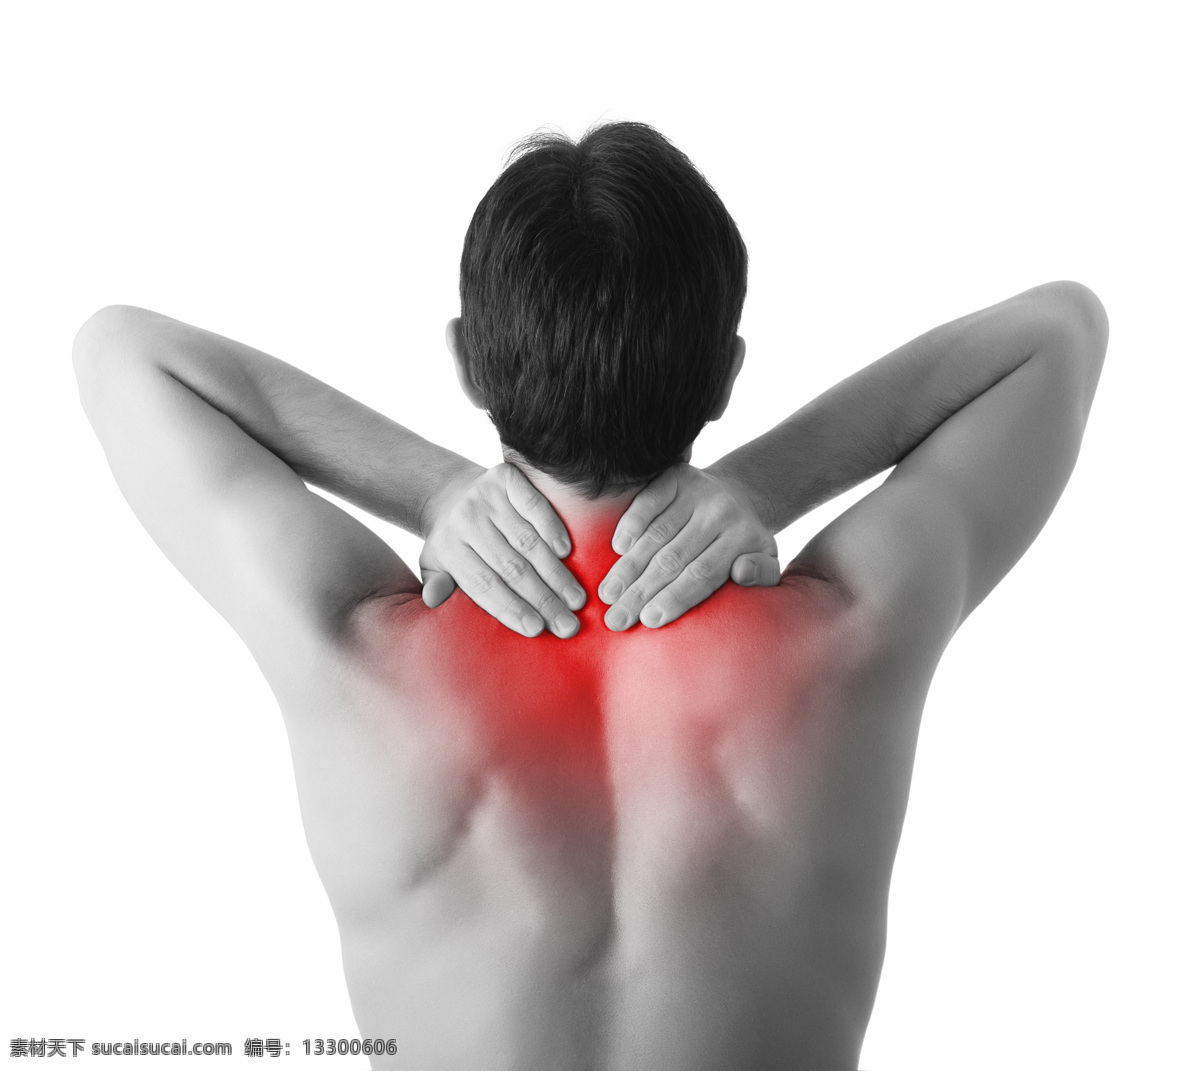 颈 肩部 疼痛 男性 颈肩部疼痛 疼痛部位 伤痛 痛感 亚健康 人体 生活人物 人体器官图 人物图片